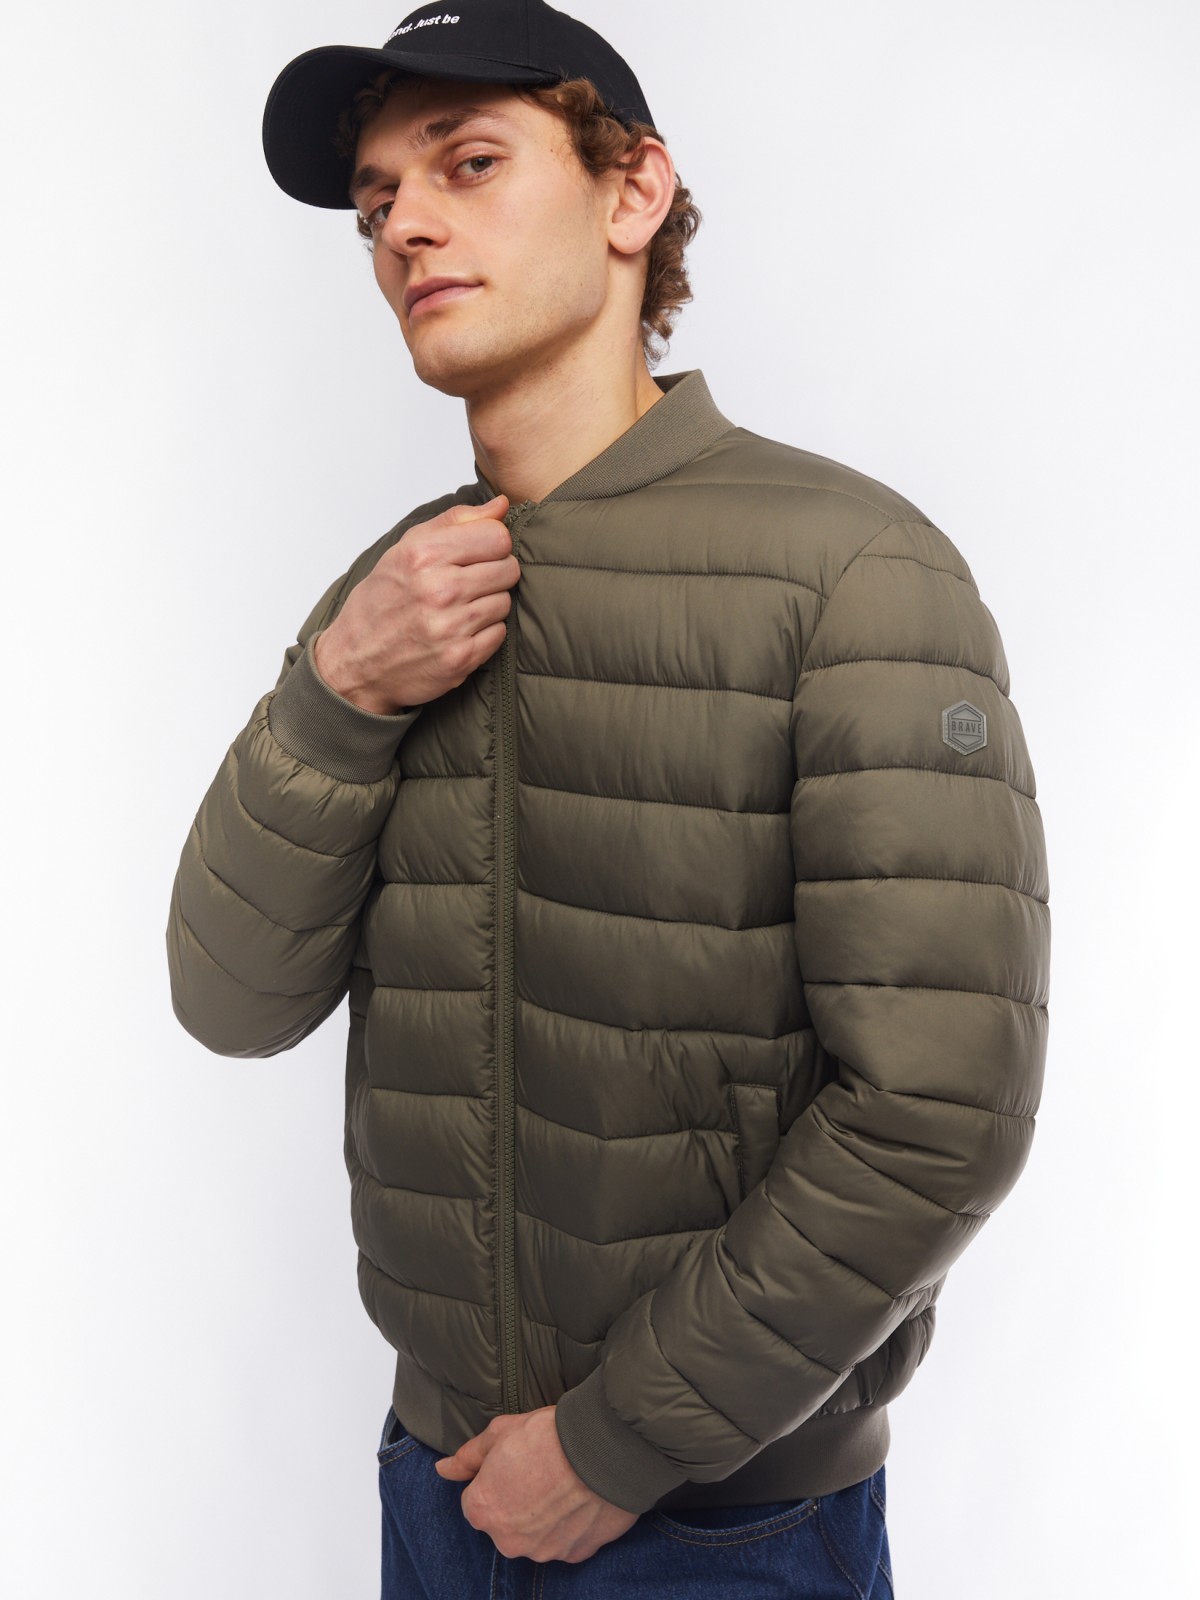 Лёгкая утеплённая куртка-бомбер с воротником-стойкой zolla 014125102104, цвет хаки, размер M - фото 1